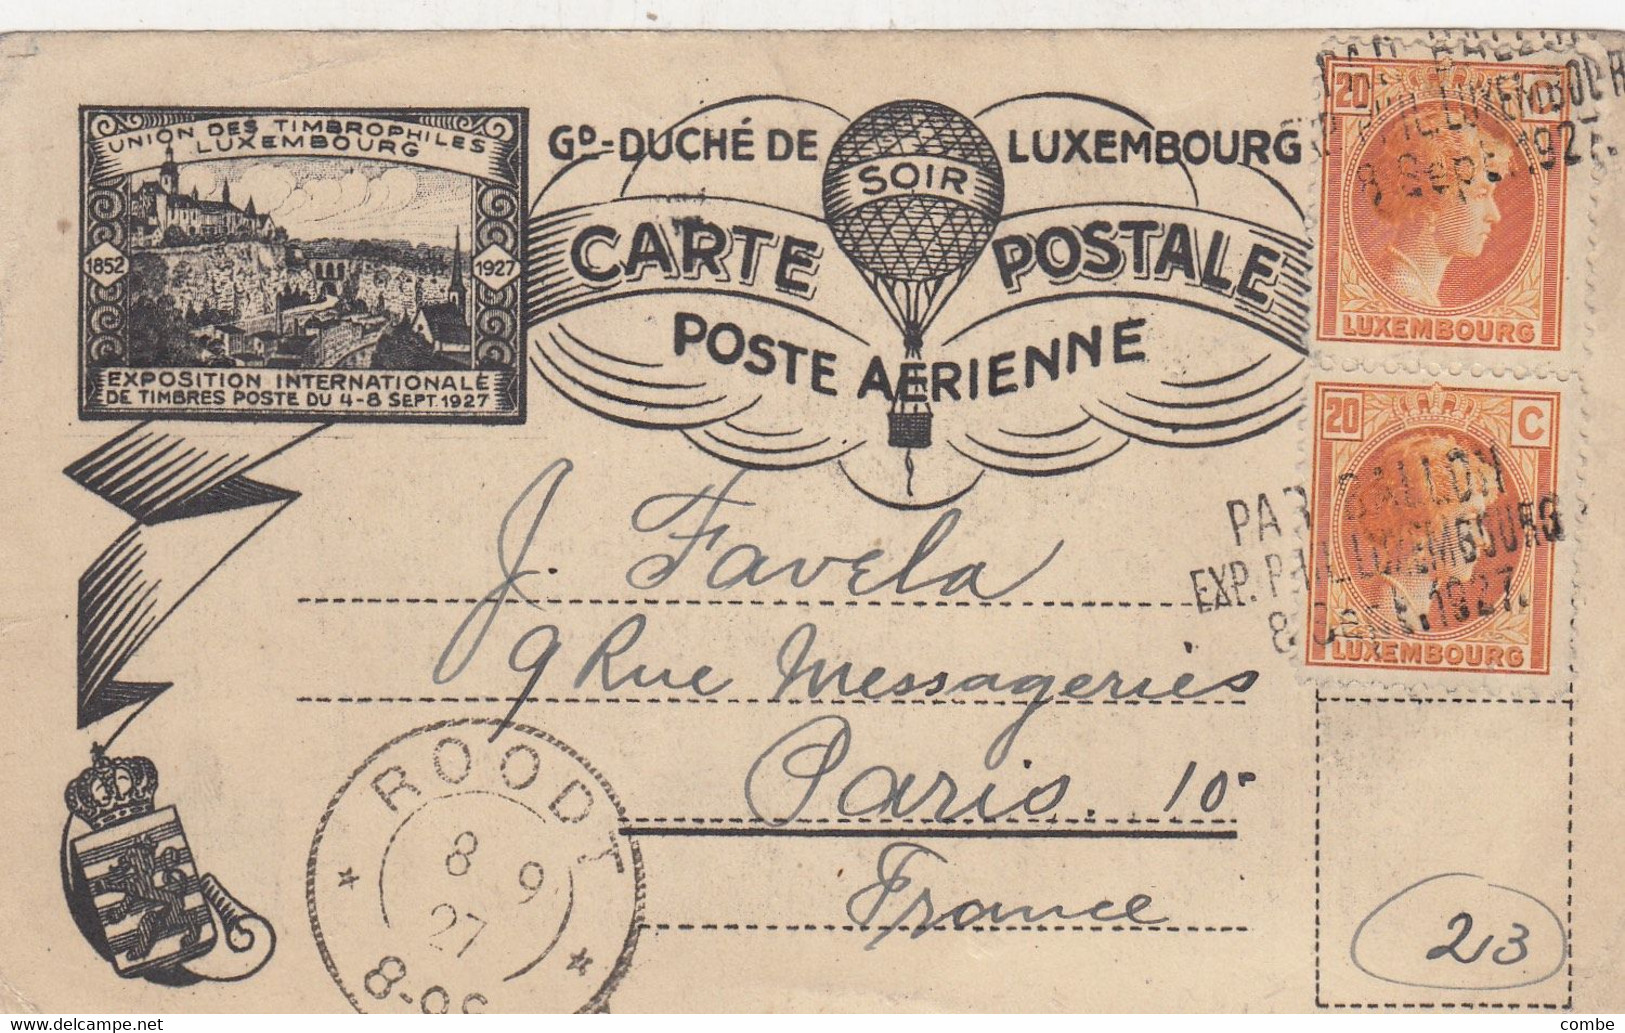 LUXEMBOURG. CARTE POSTALE POSTE AERIENNE. PAR BALLON. 8 SEPT 1927. ROODT POUR PARIS - Covers & Documents